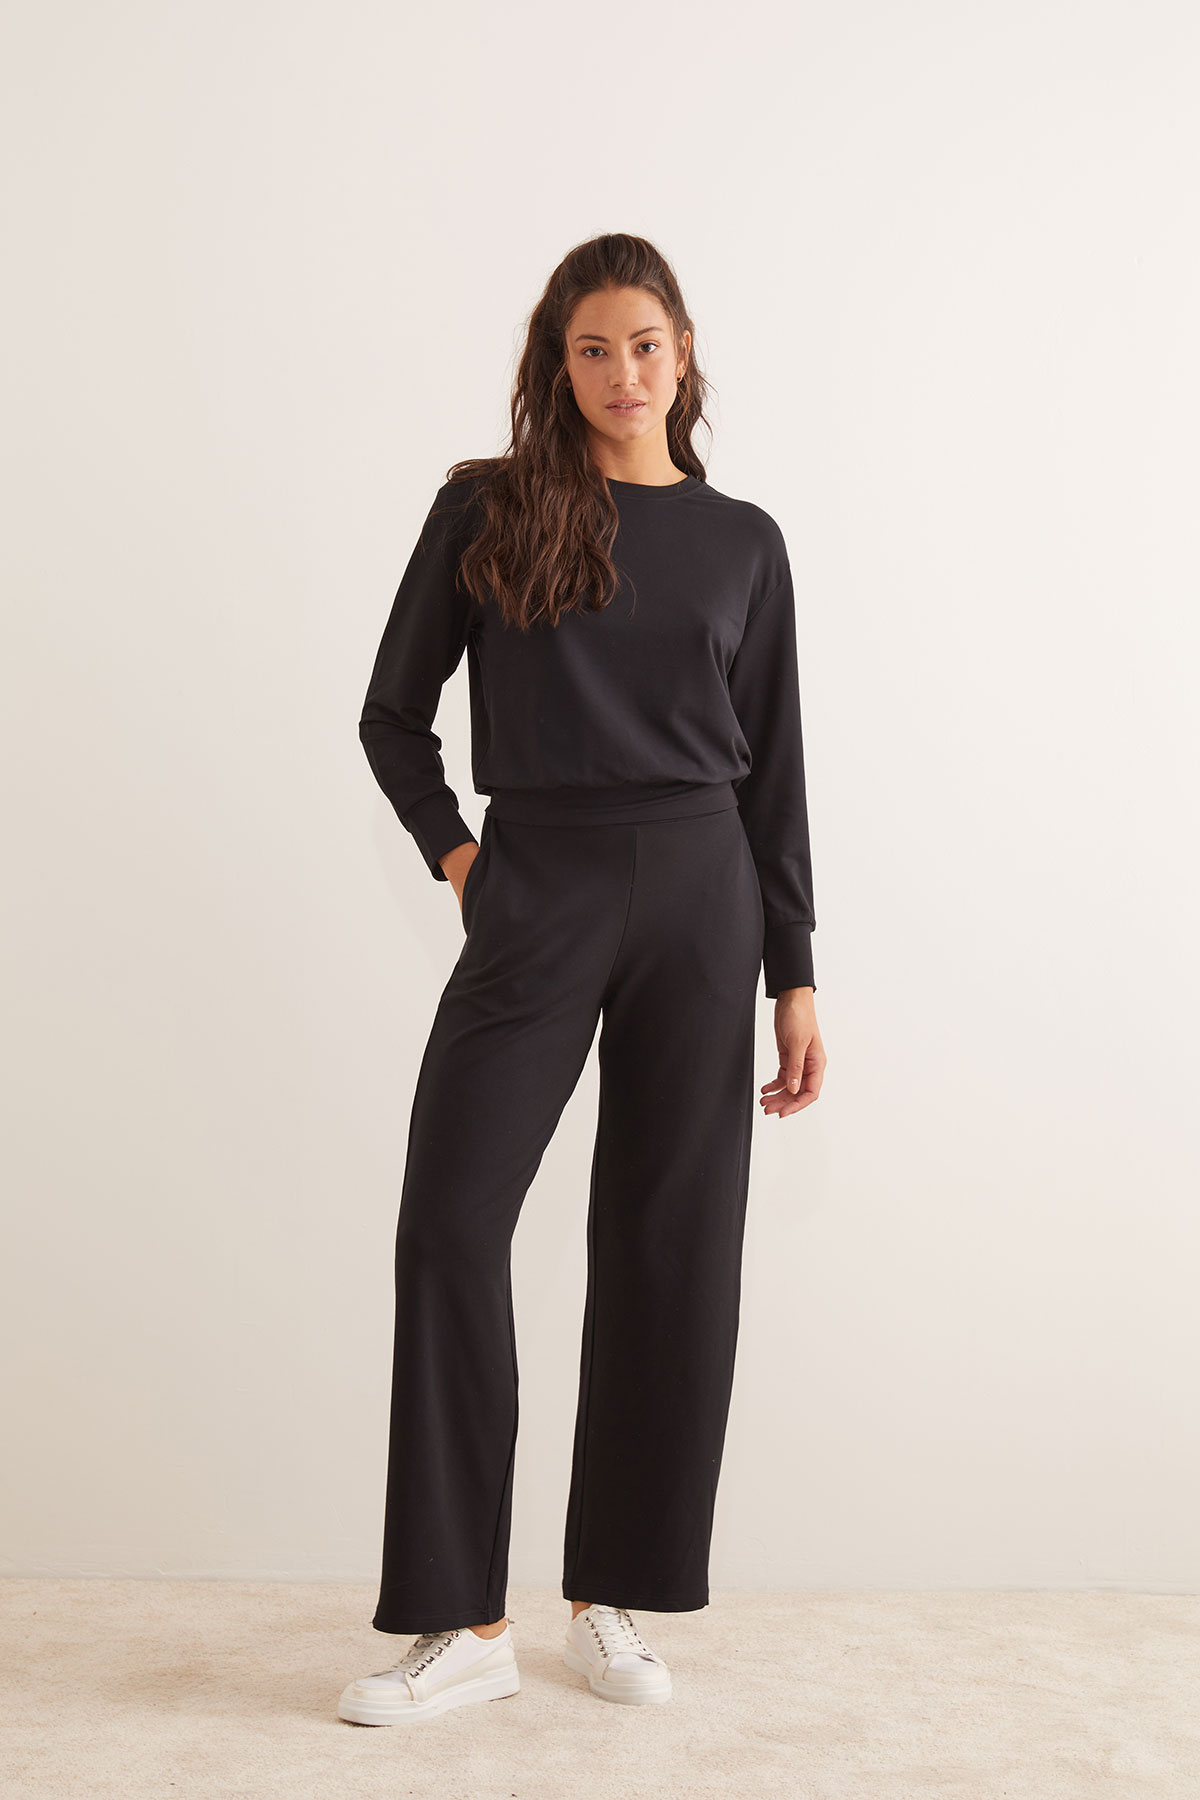 Kadın Modal İki İplik Uzun Kollu Bol Pantolon Takım